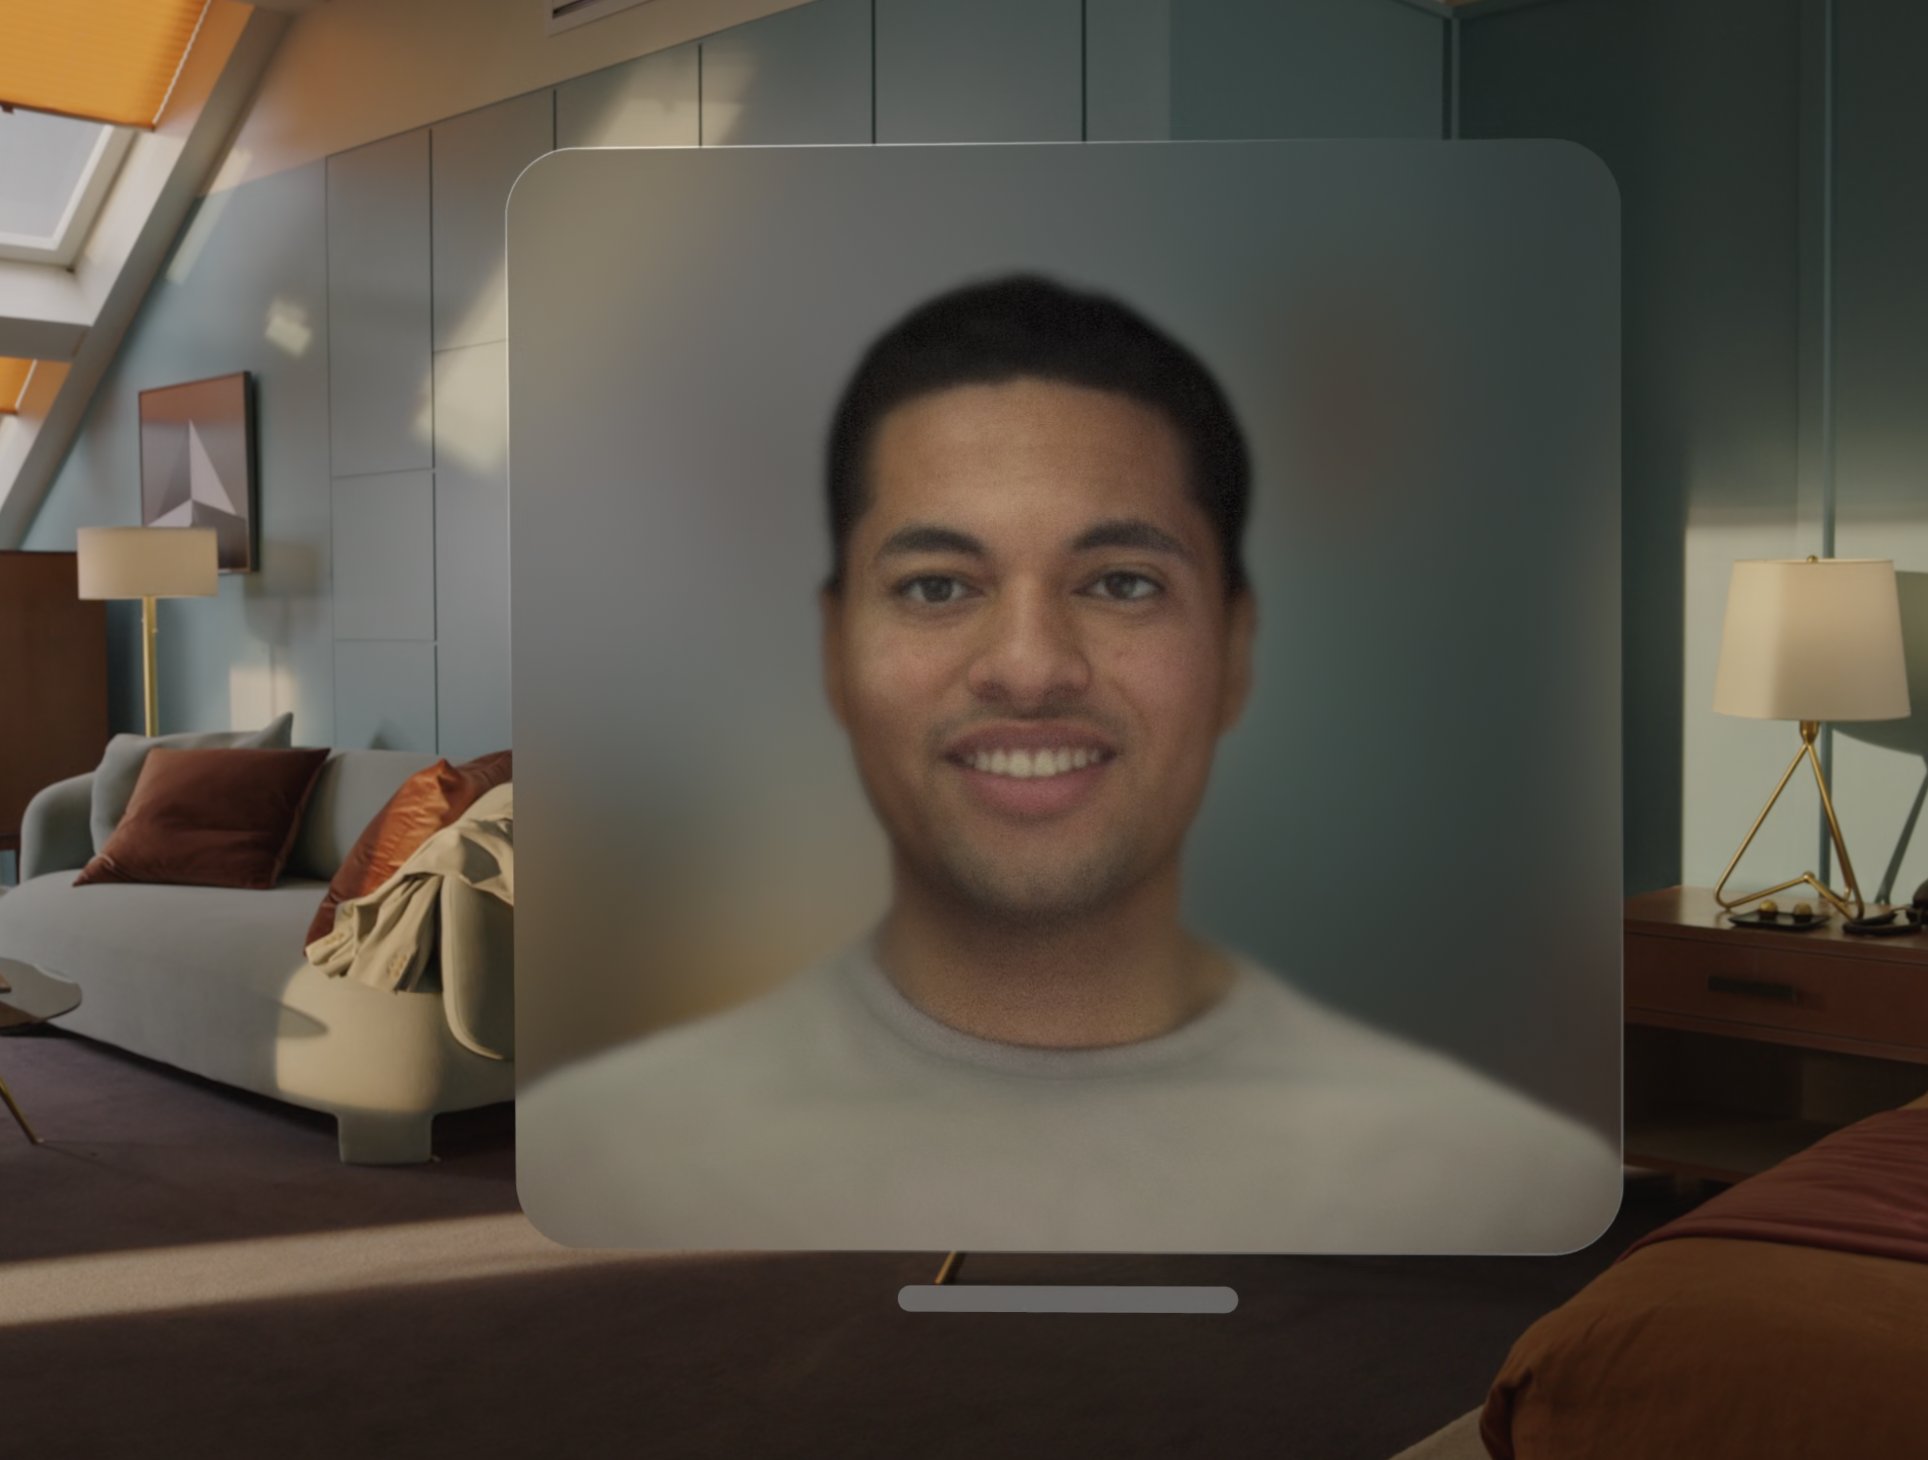 Modelo 3D de la cara del usuario en una llamada de FaceTime